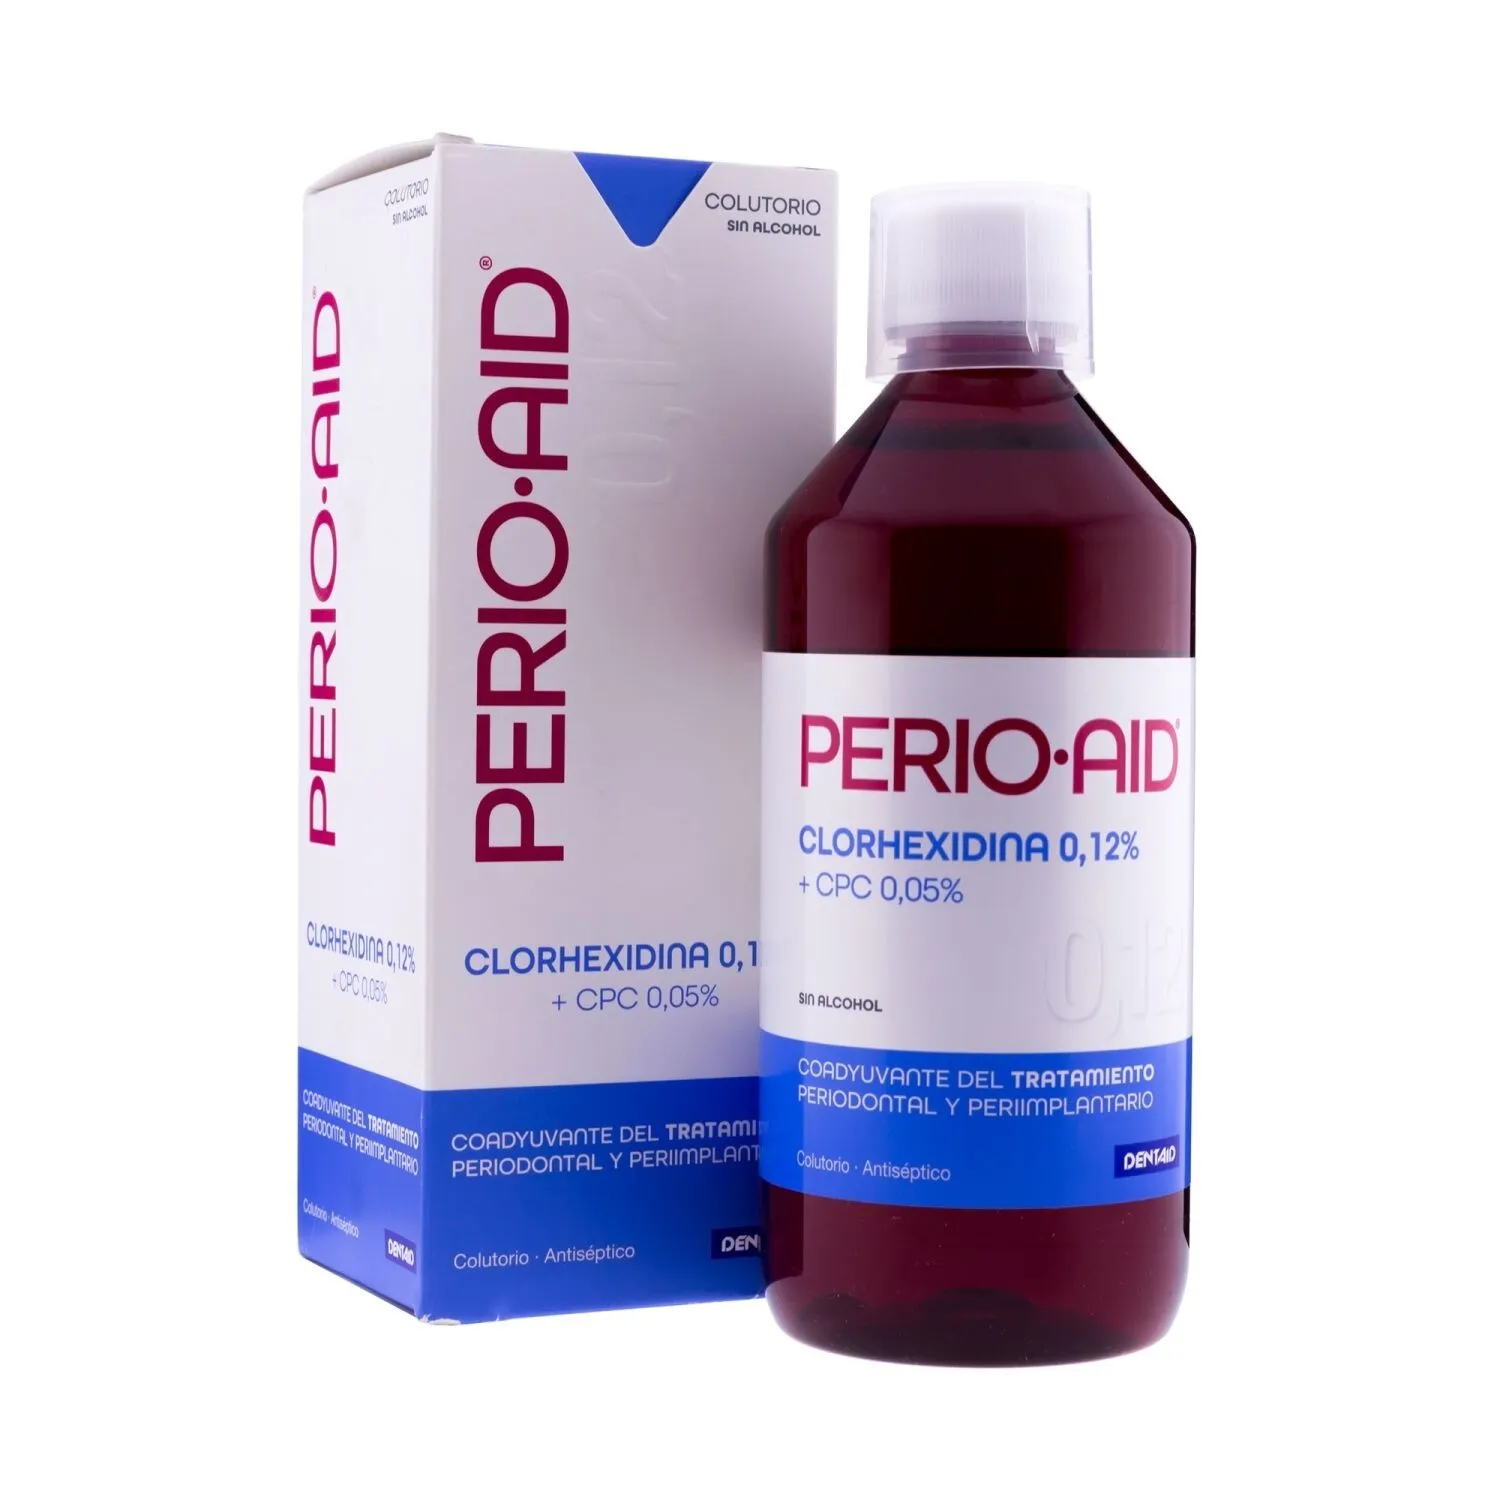 Nước súc miệng Perio-Aid Intensive Care chăm sóc đặc biệt sau phẫu thuật, điều trị nha chu